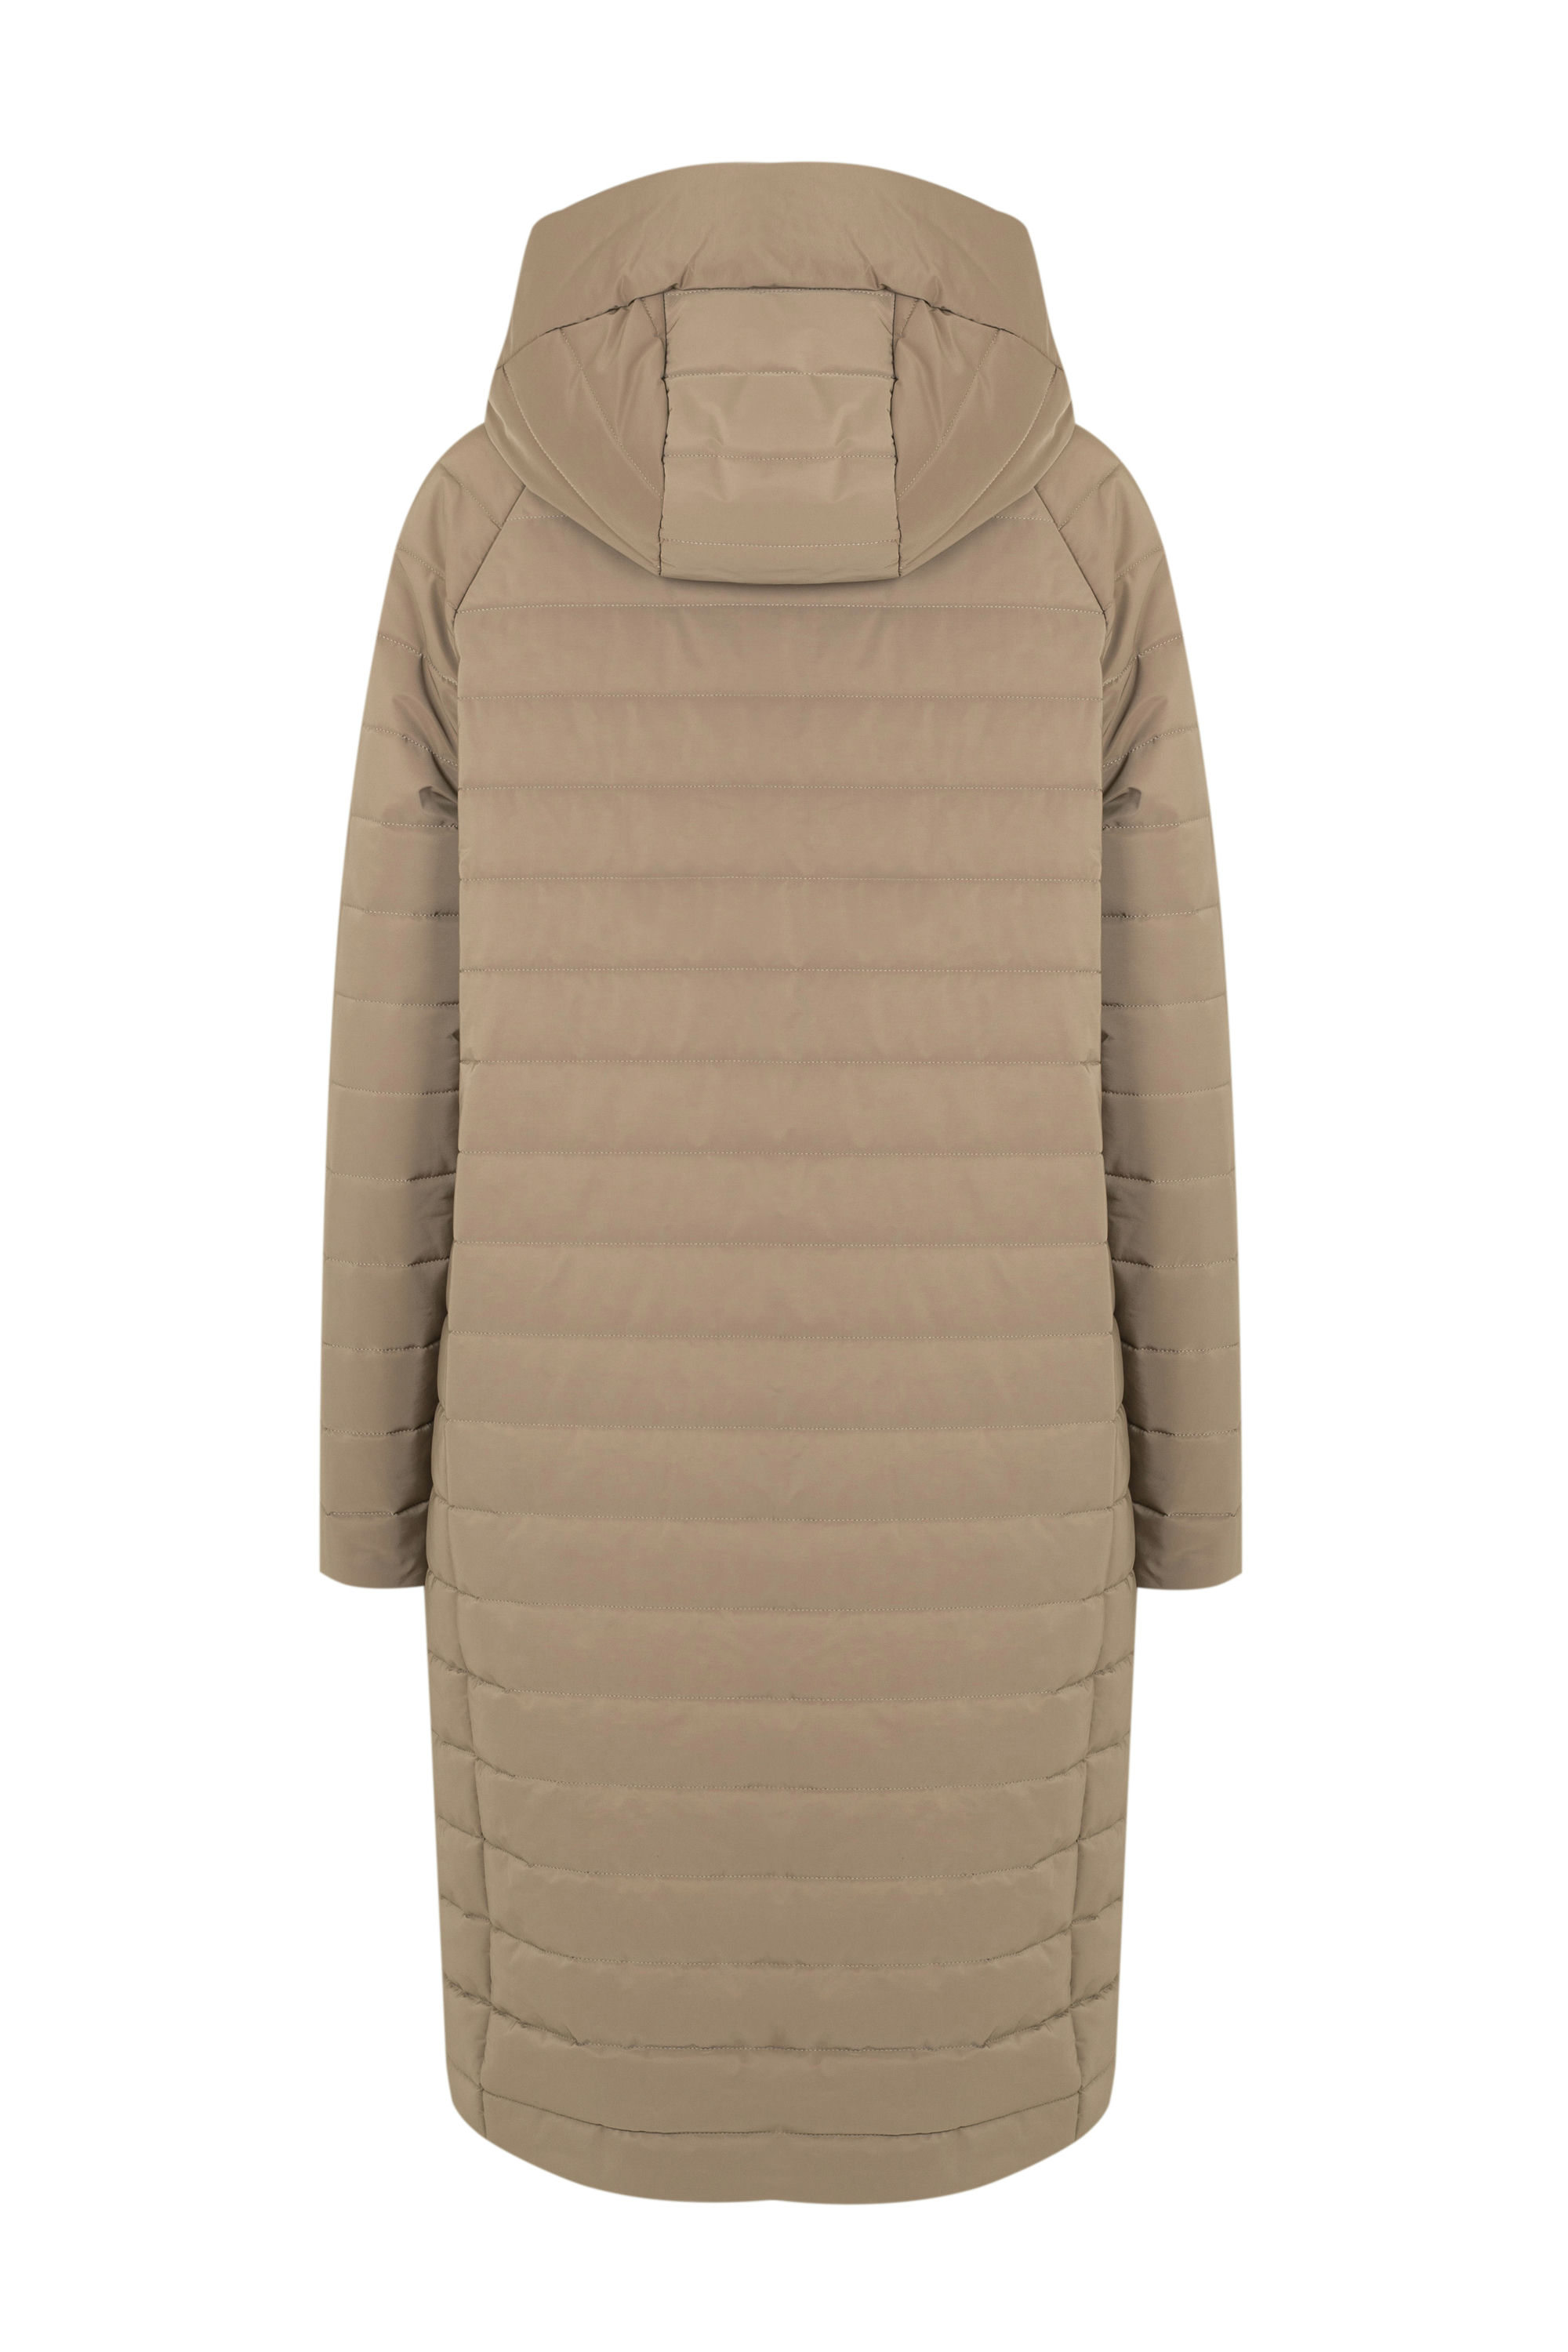 Пальто женское плащевое утепленное 5-10652-2